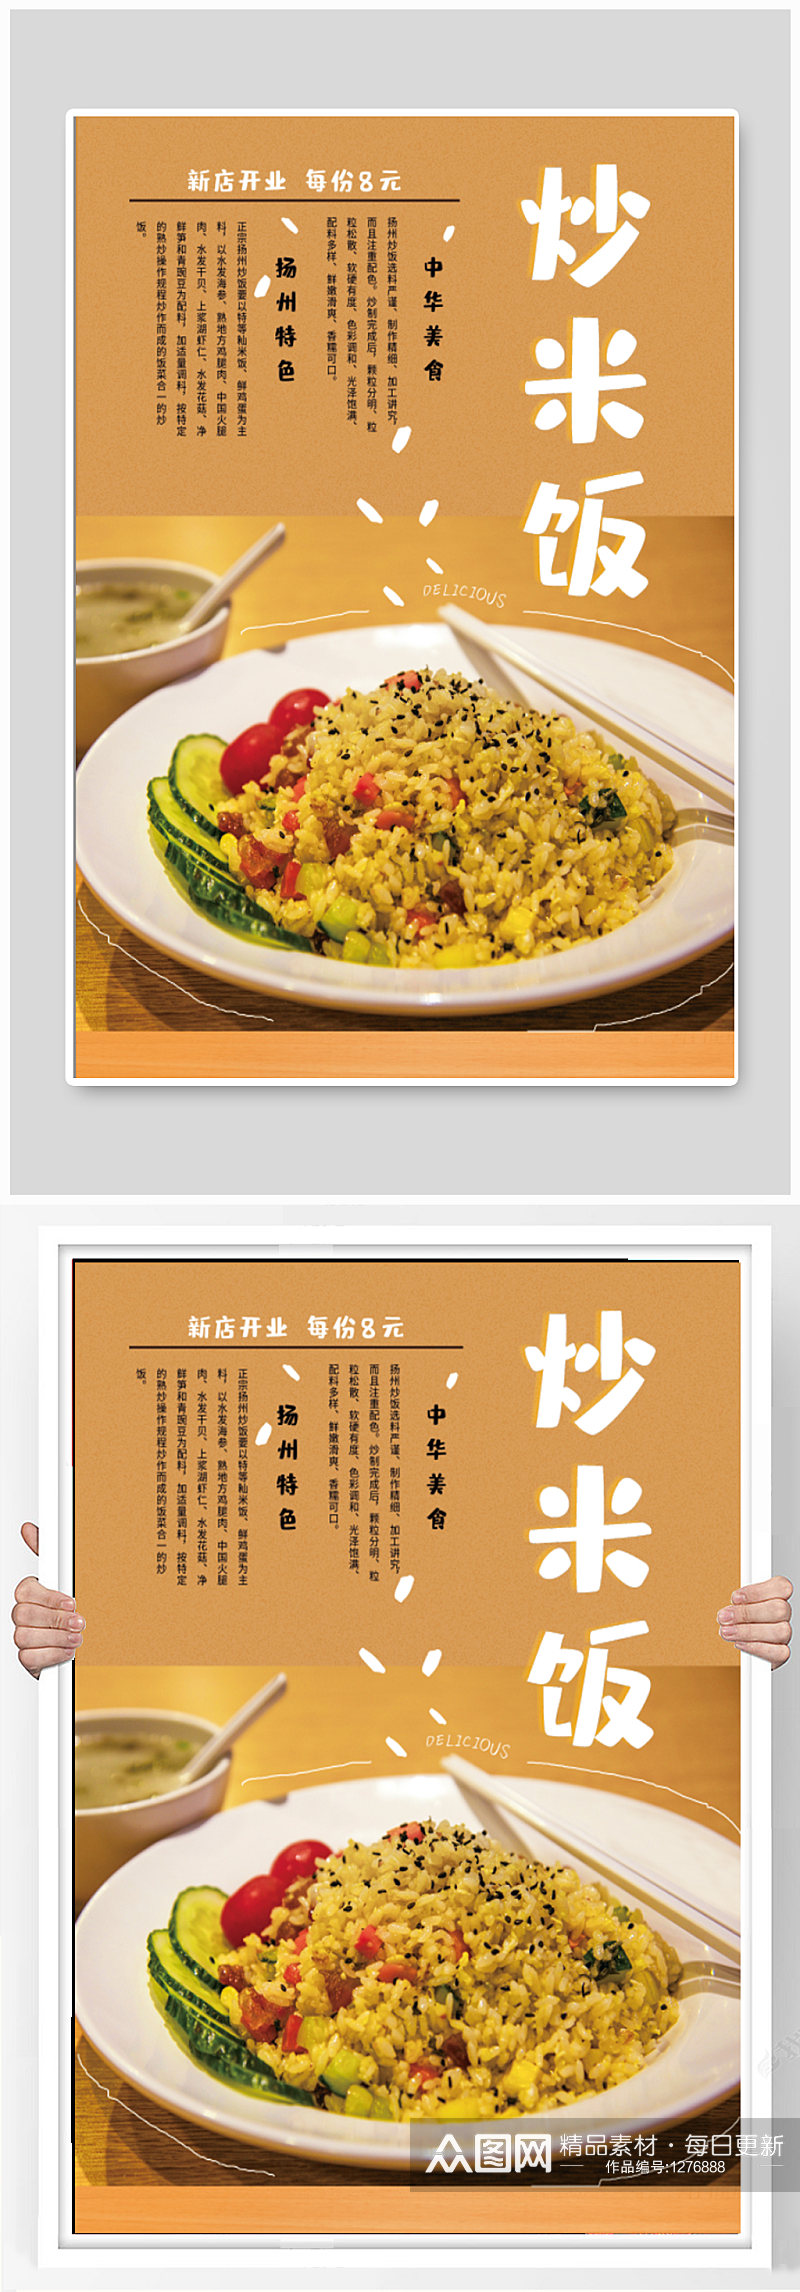 炒米饭美食宣传海报素材